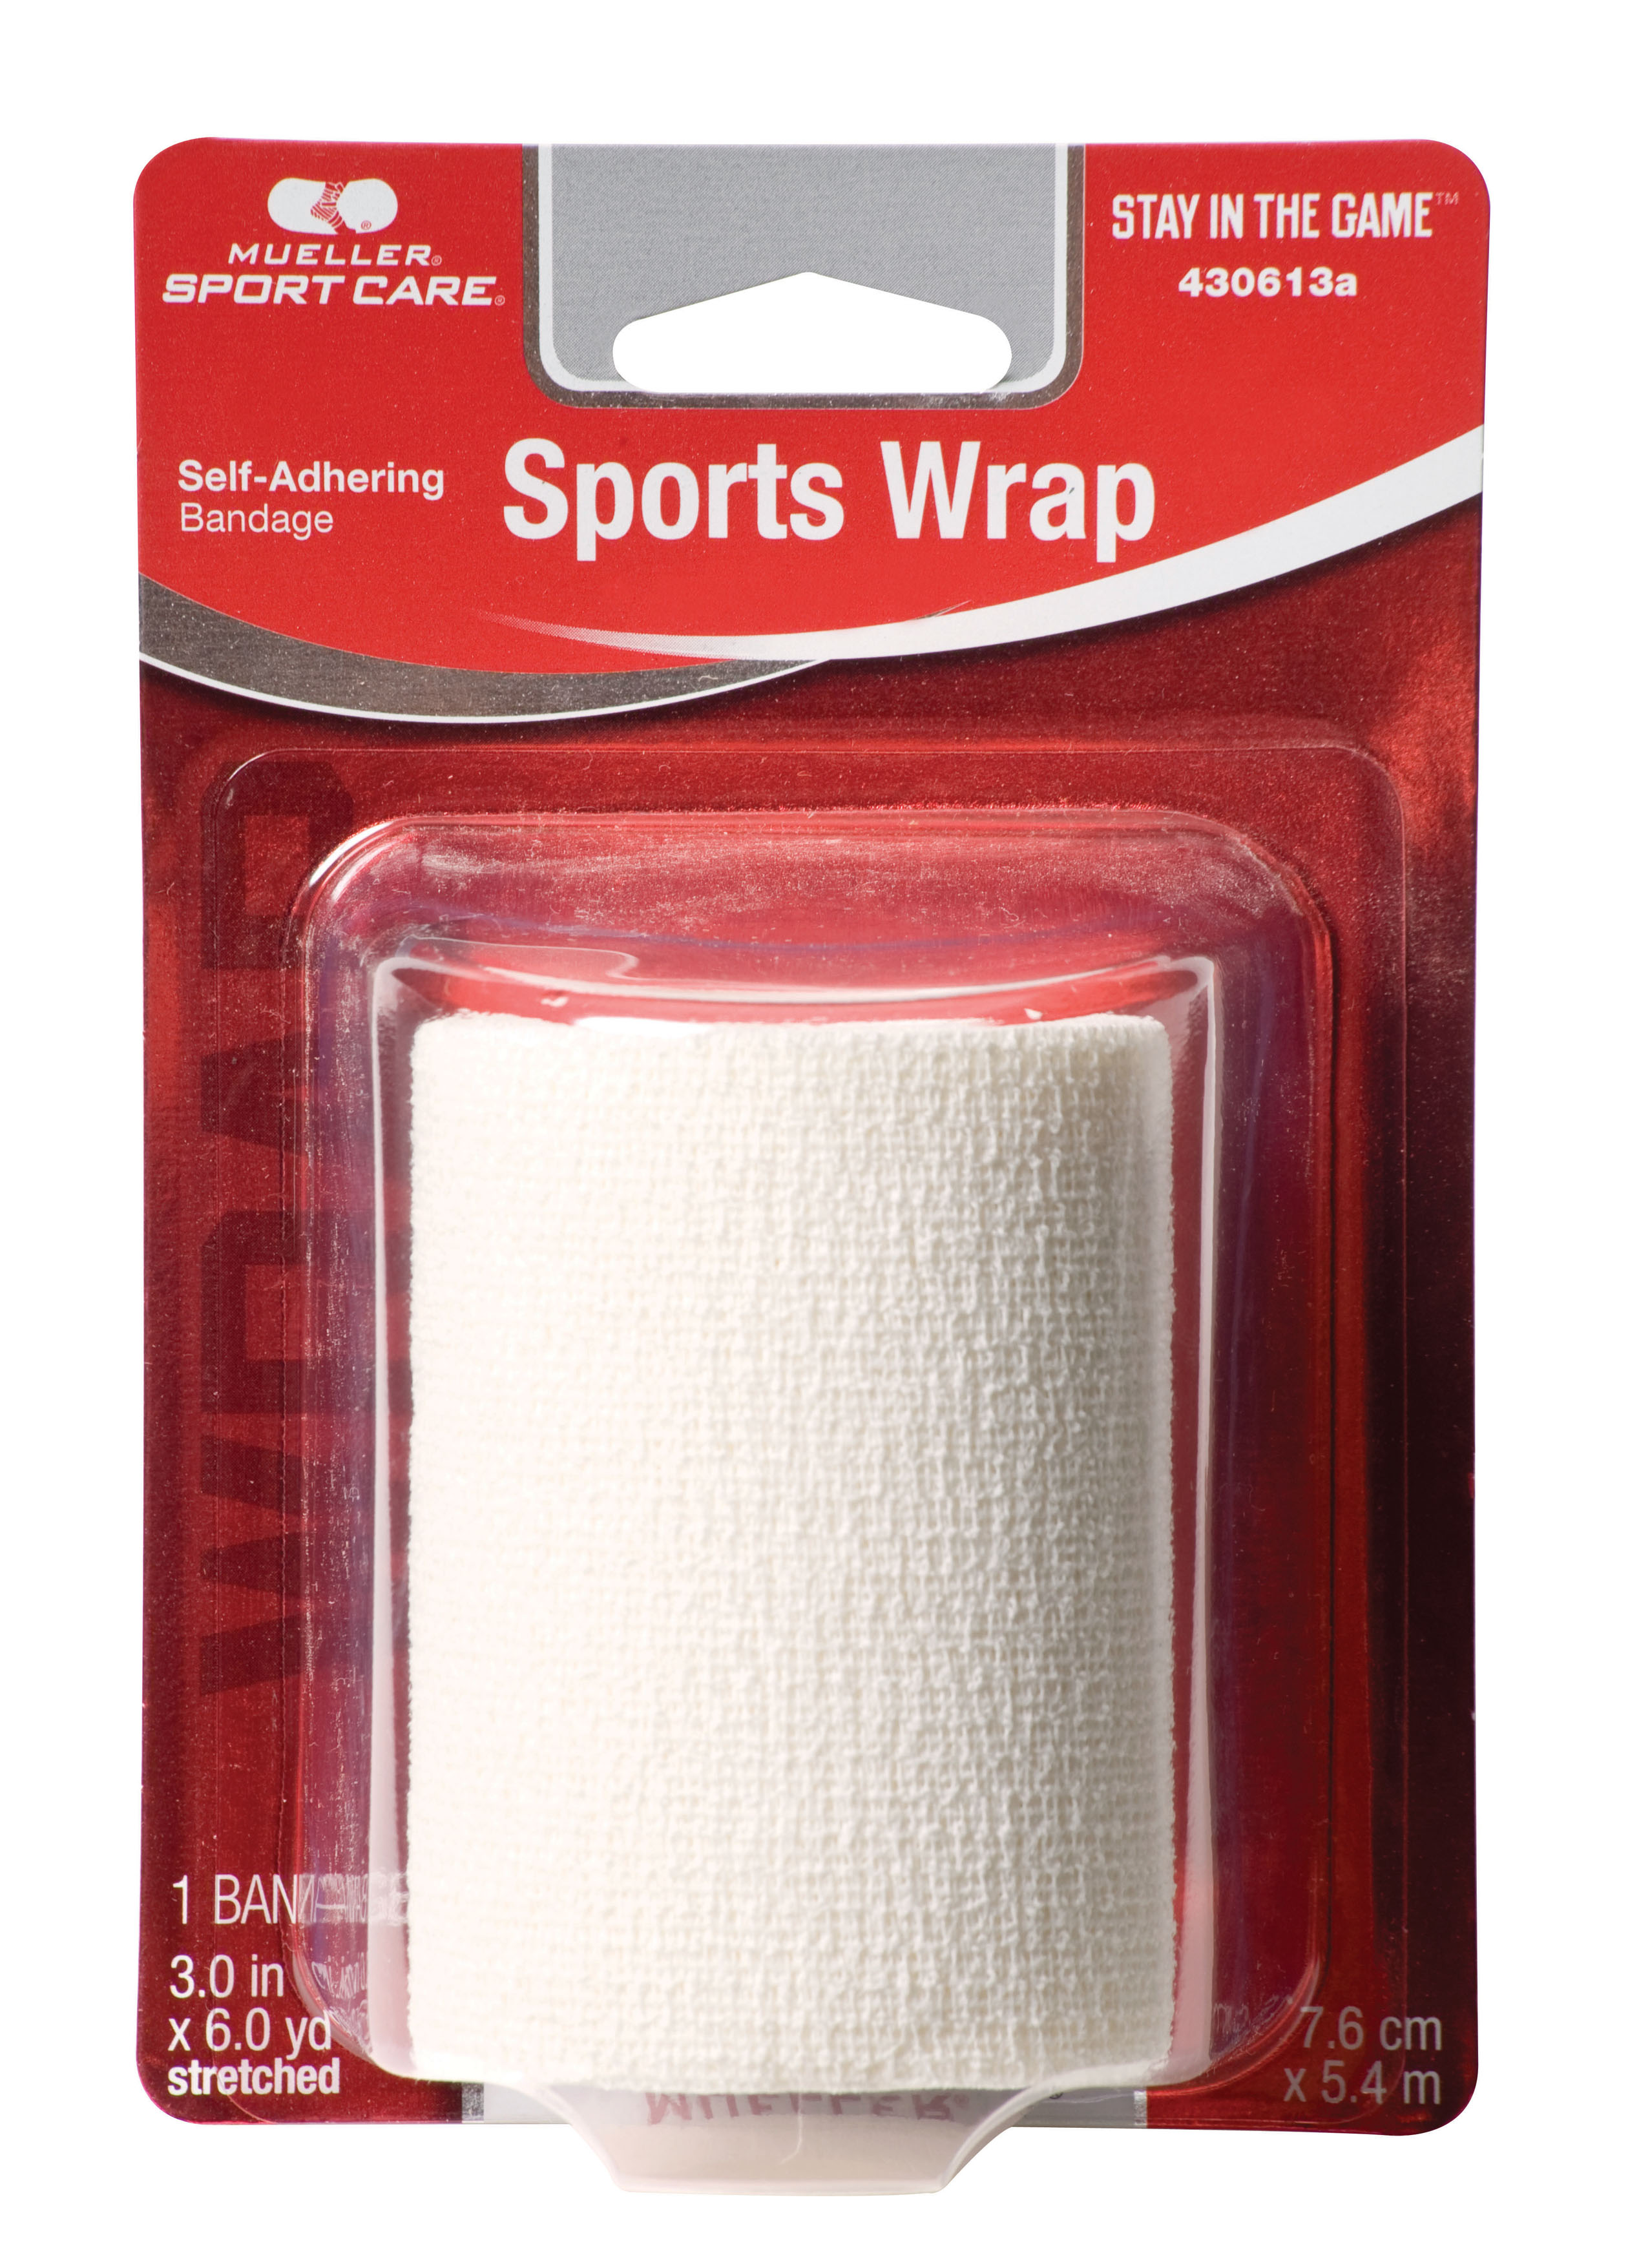 Mueller Sports Wrap 7,6cm x 5,4m kohäsives Tape Vorteilskarton